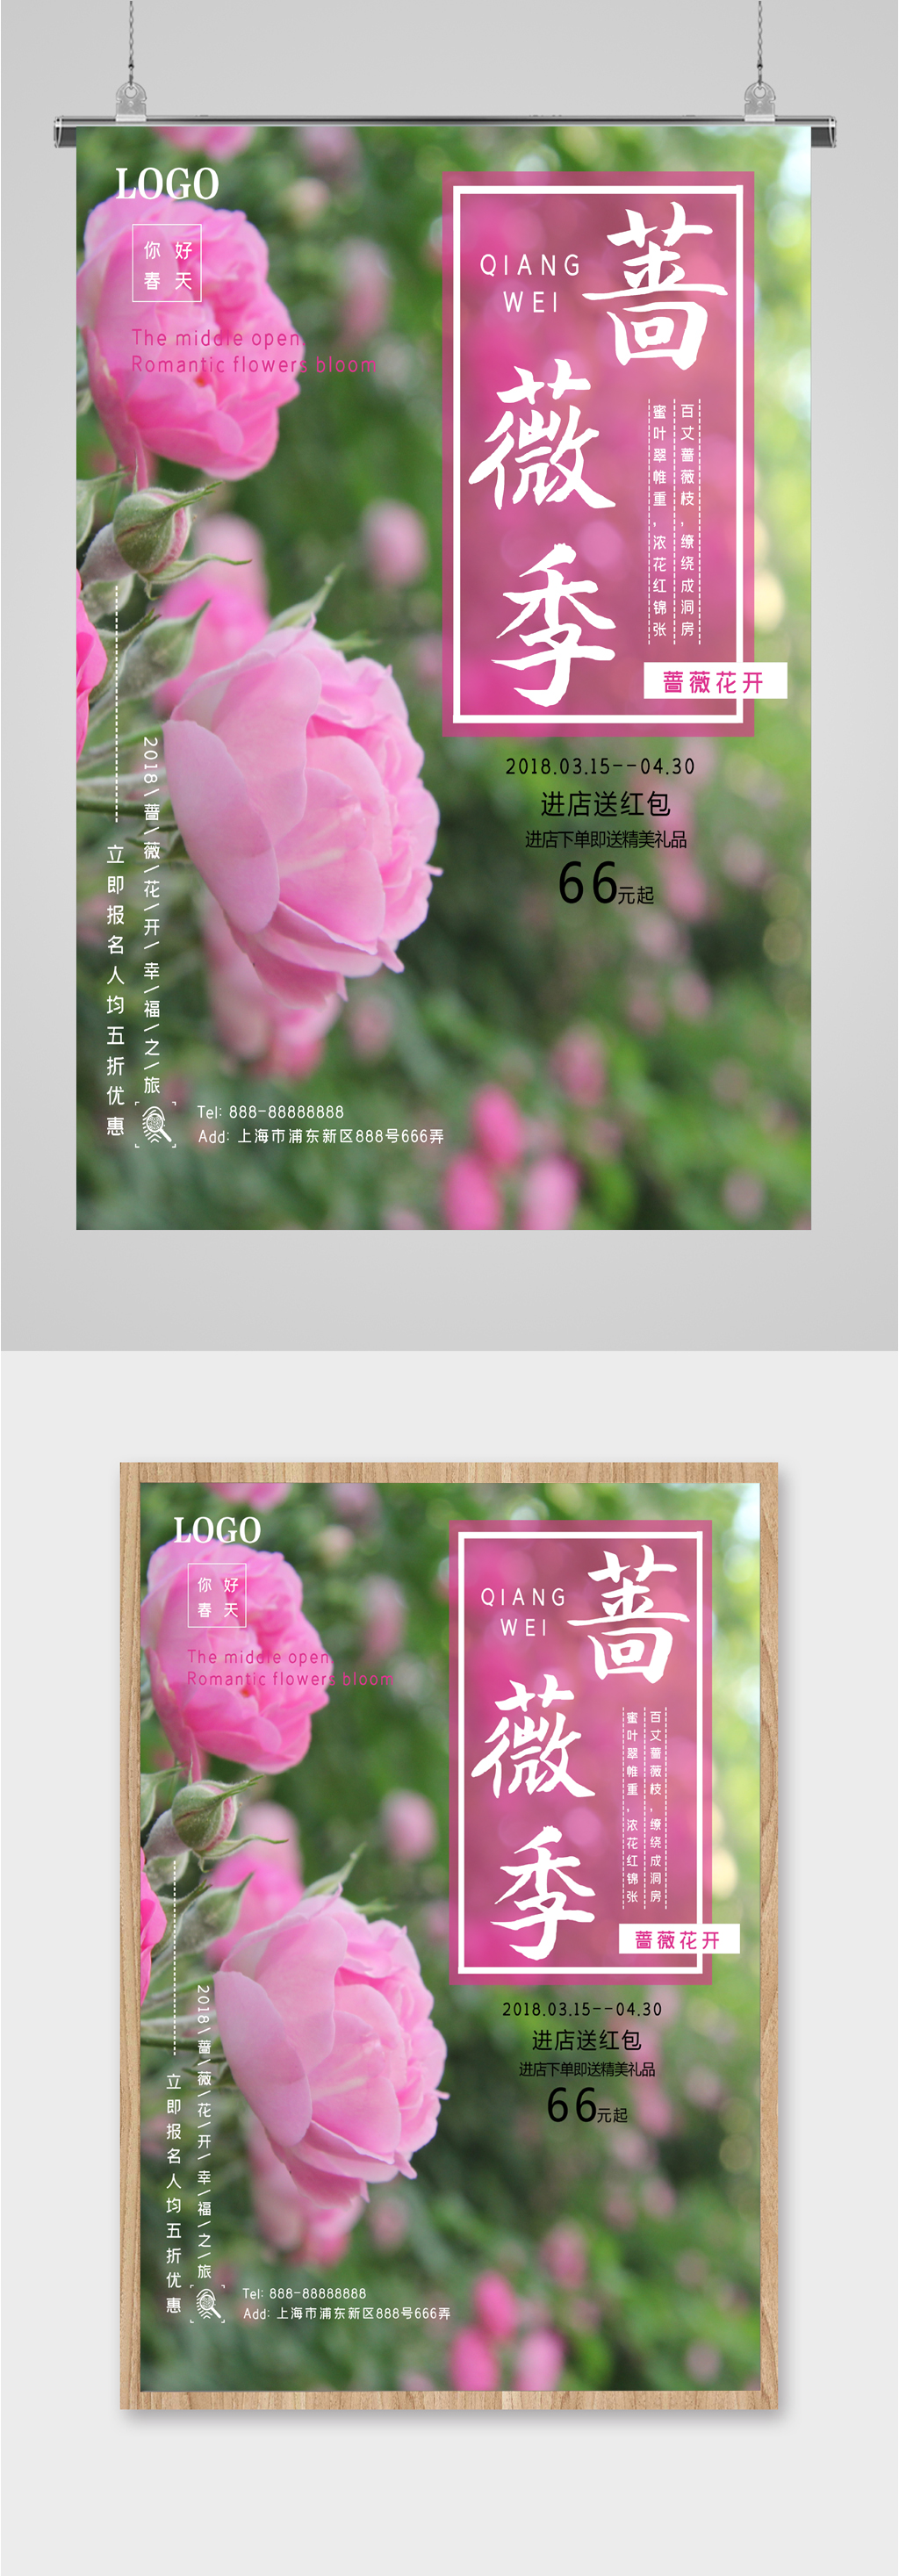 蔷薇花文案图片